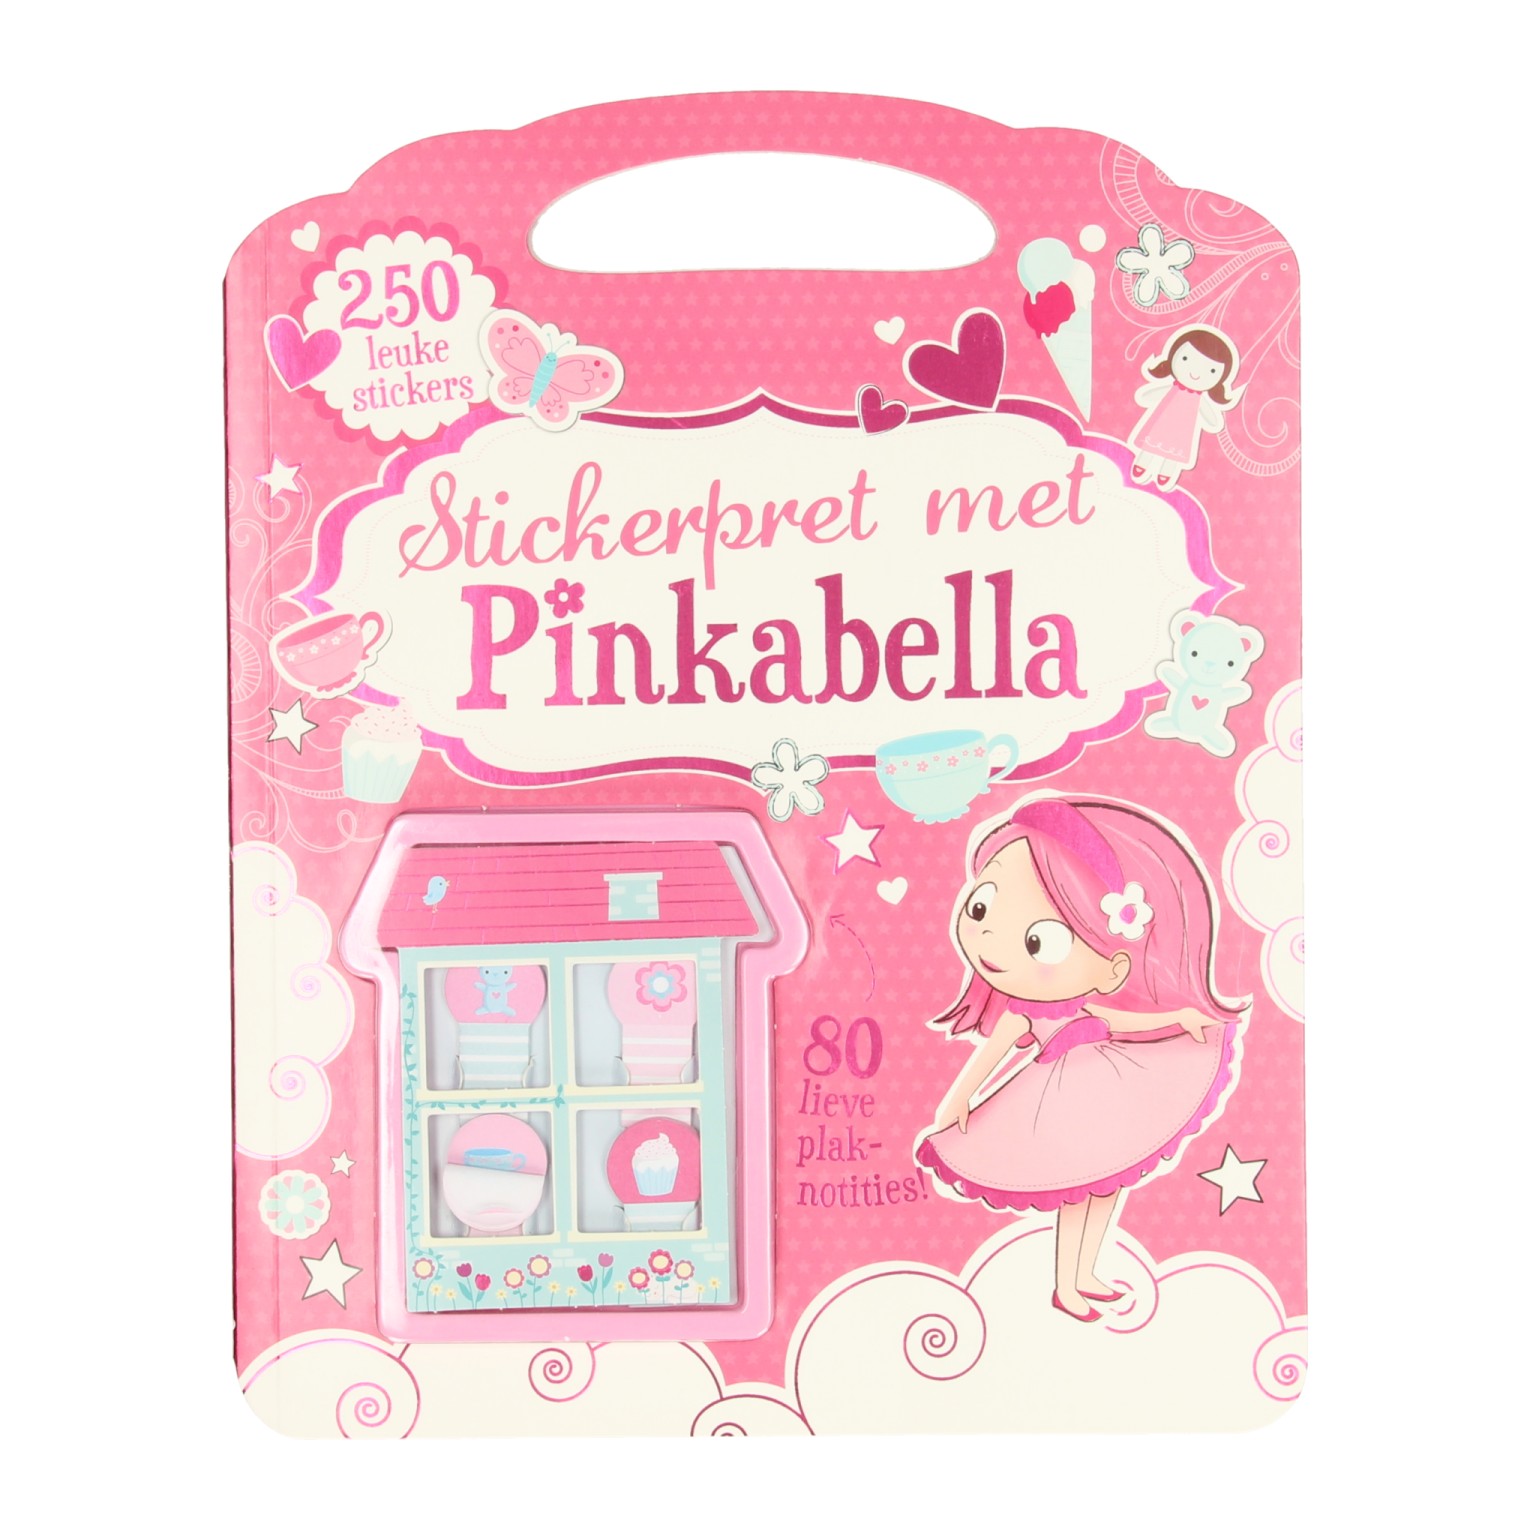 Pinkabella Stickerpret